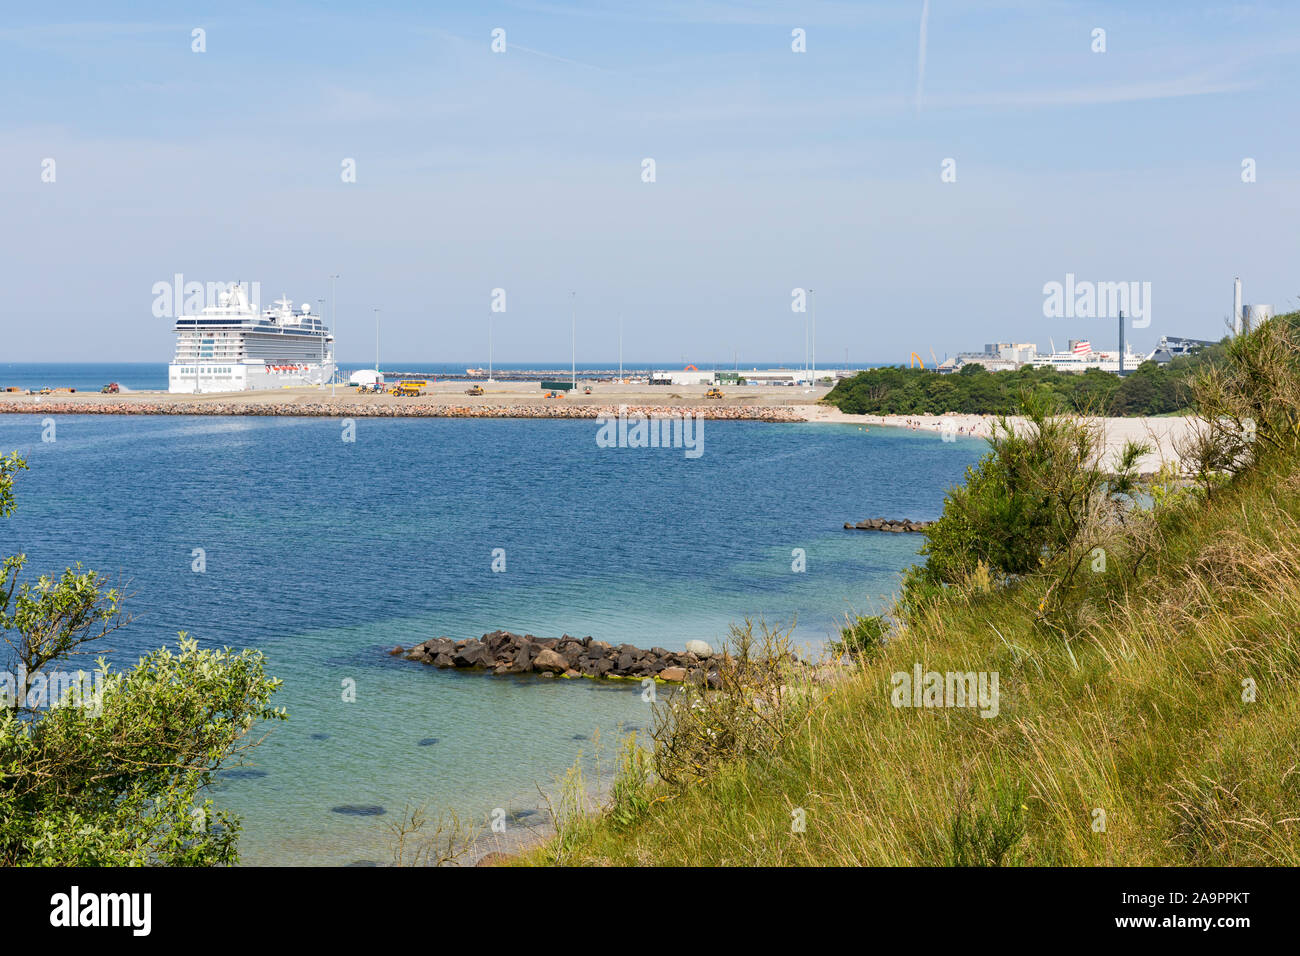 Rønne; Bornholm, Strand, Meer, neuer Hafen, Kreuzfahrtschiff Stock Photo